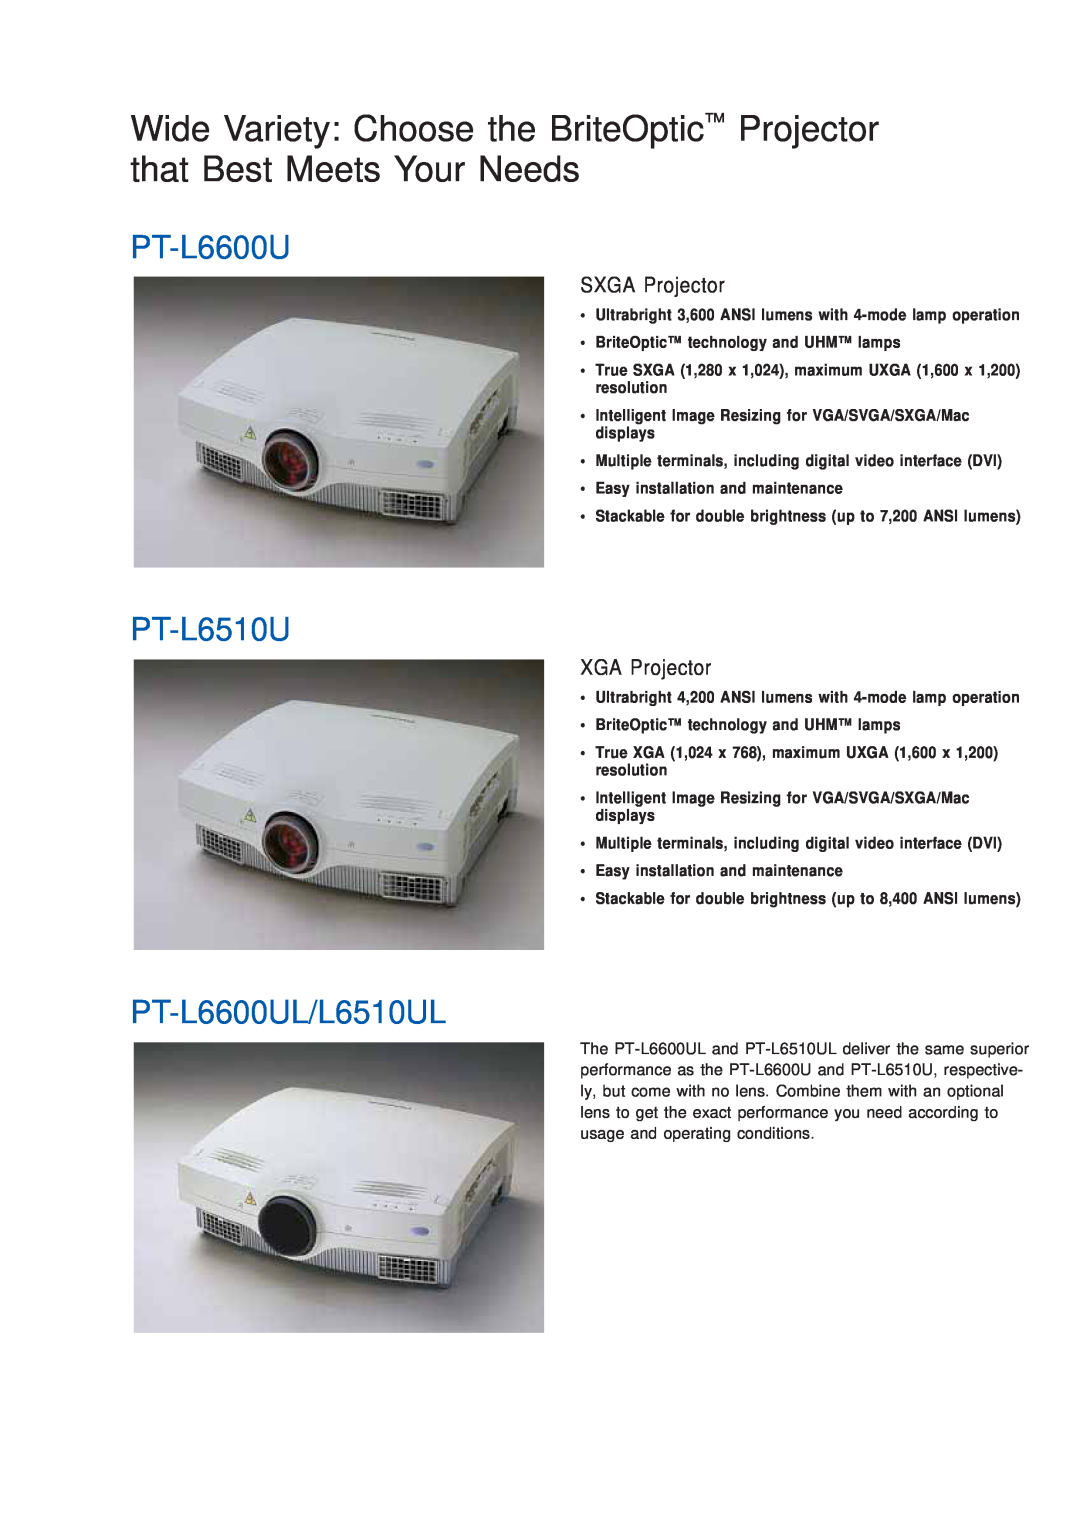 Panasonic PT-L6510UL manual PT-L6600UL/L6510UL, SXGA Projector 